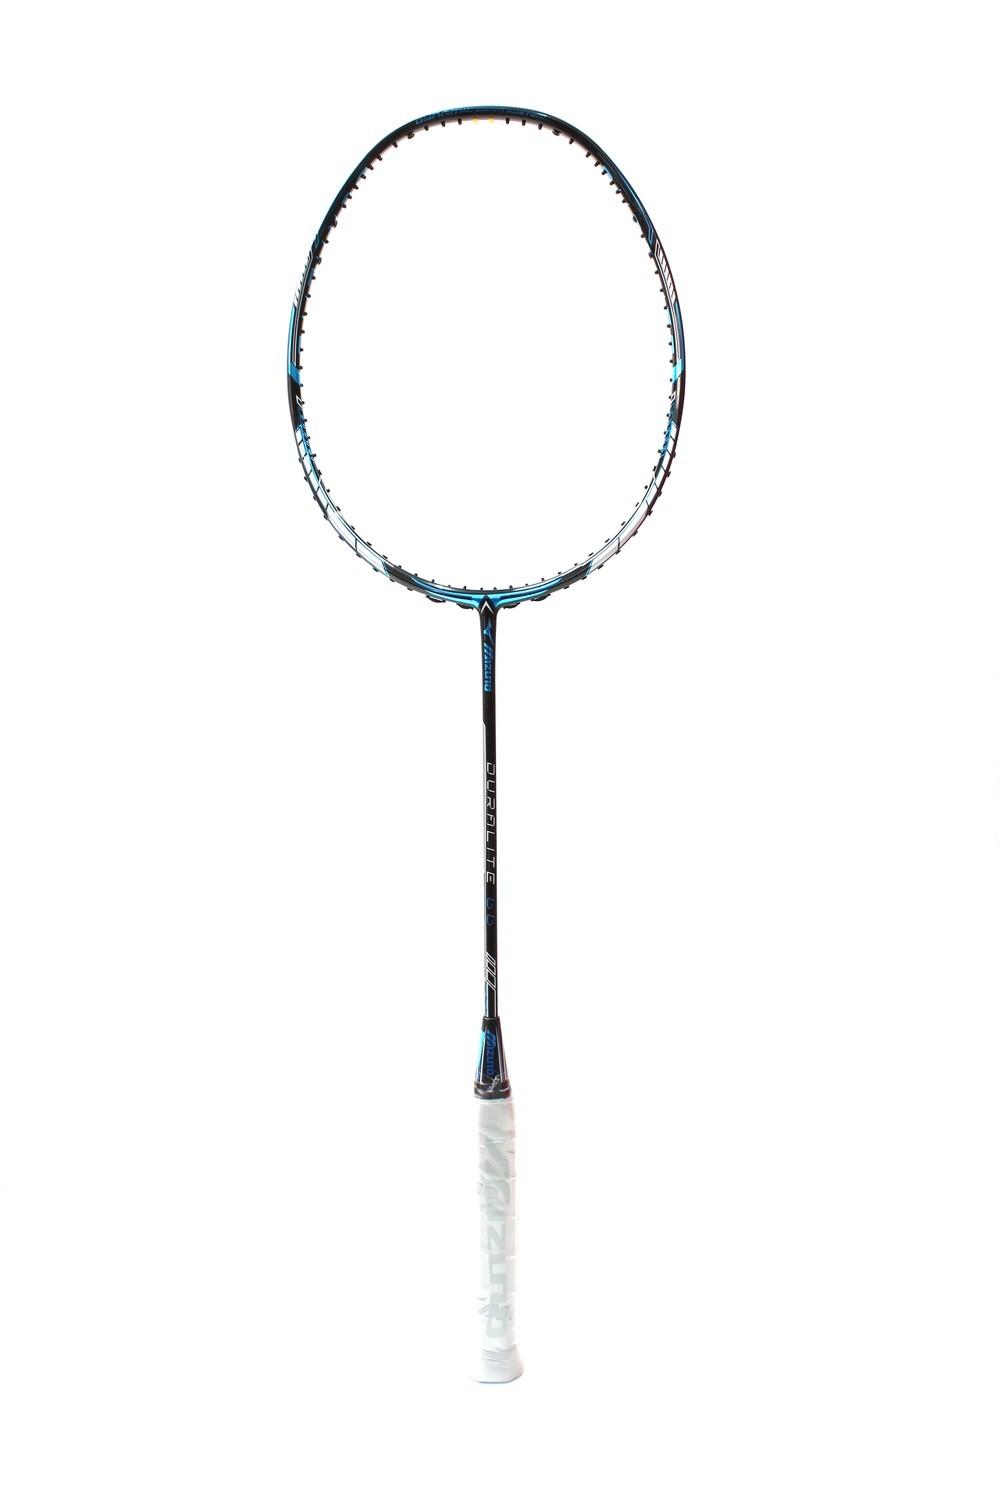 Mizuno Duralite 66 Badminton Racquet